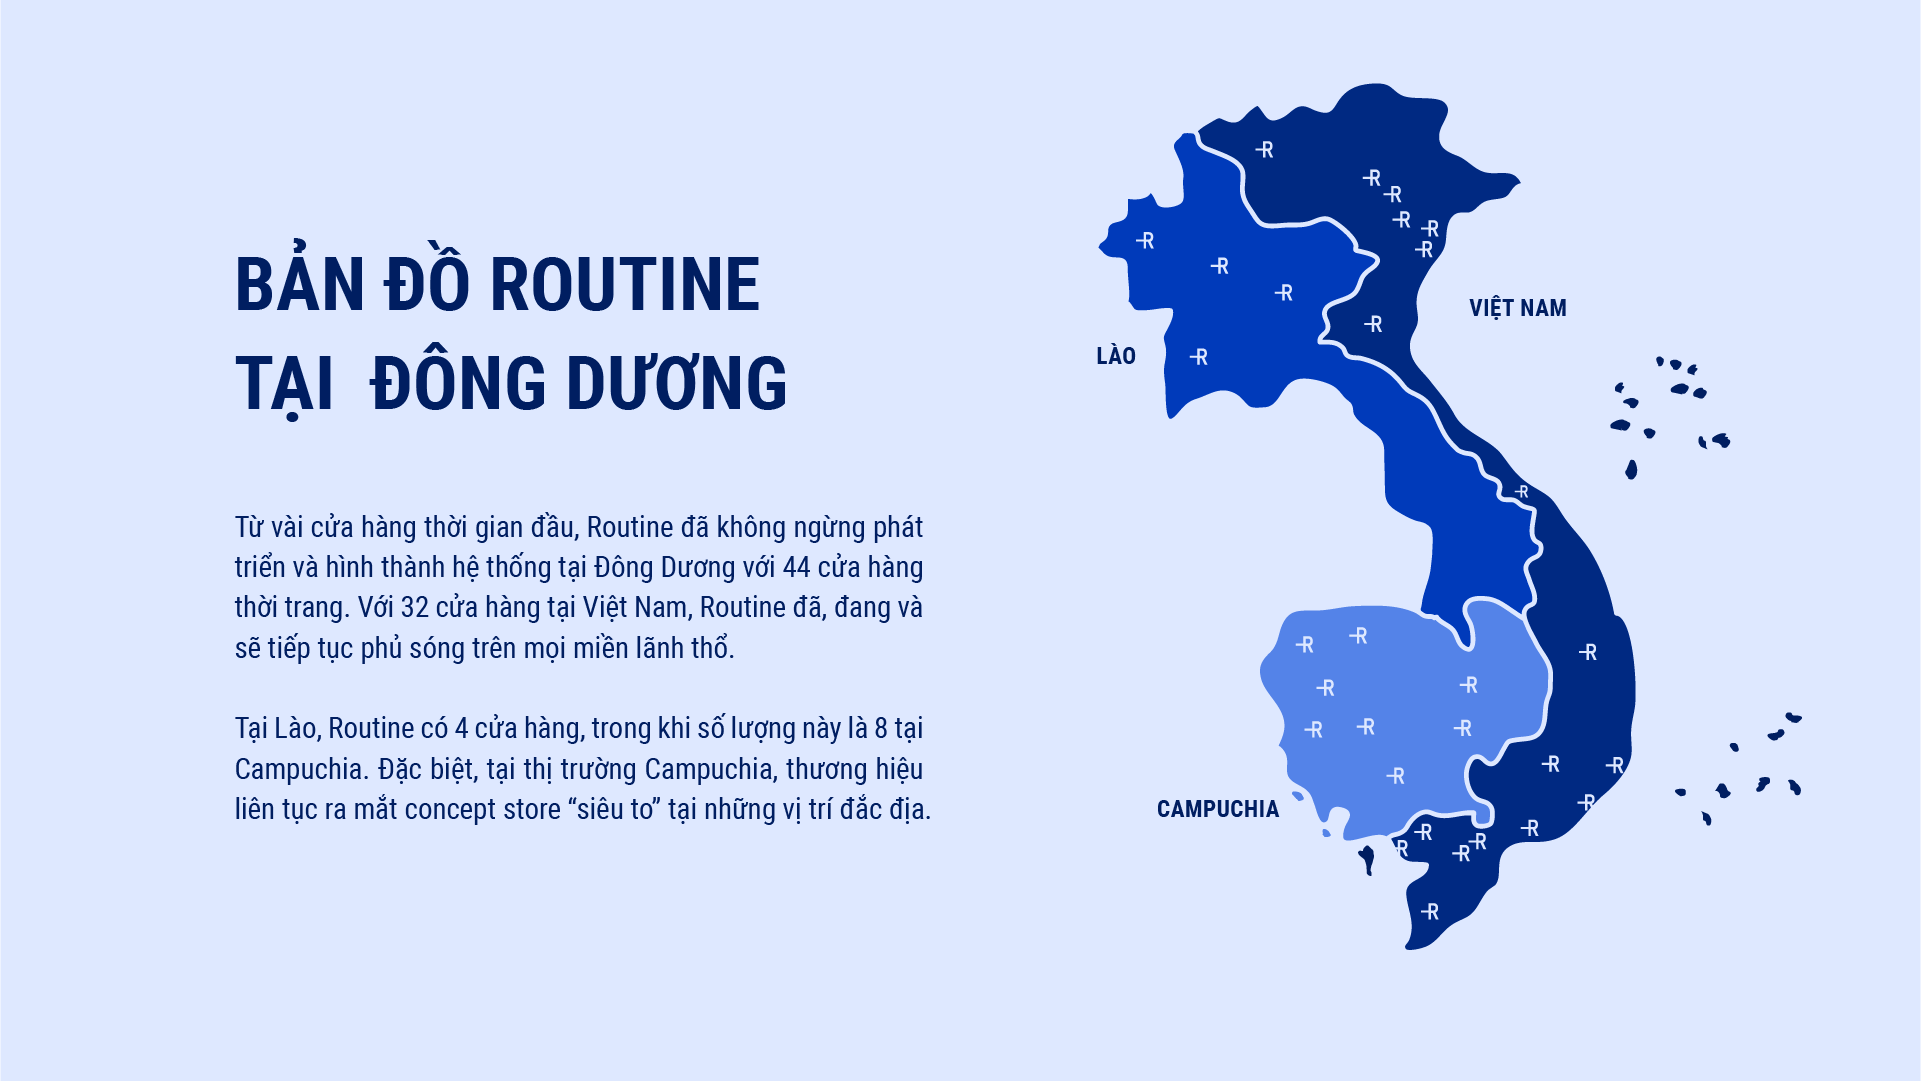 Bản đồ cửa hàng của Routine tại các nước Đông Dương